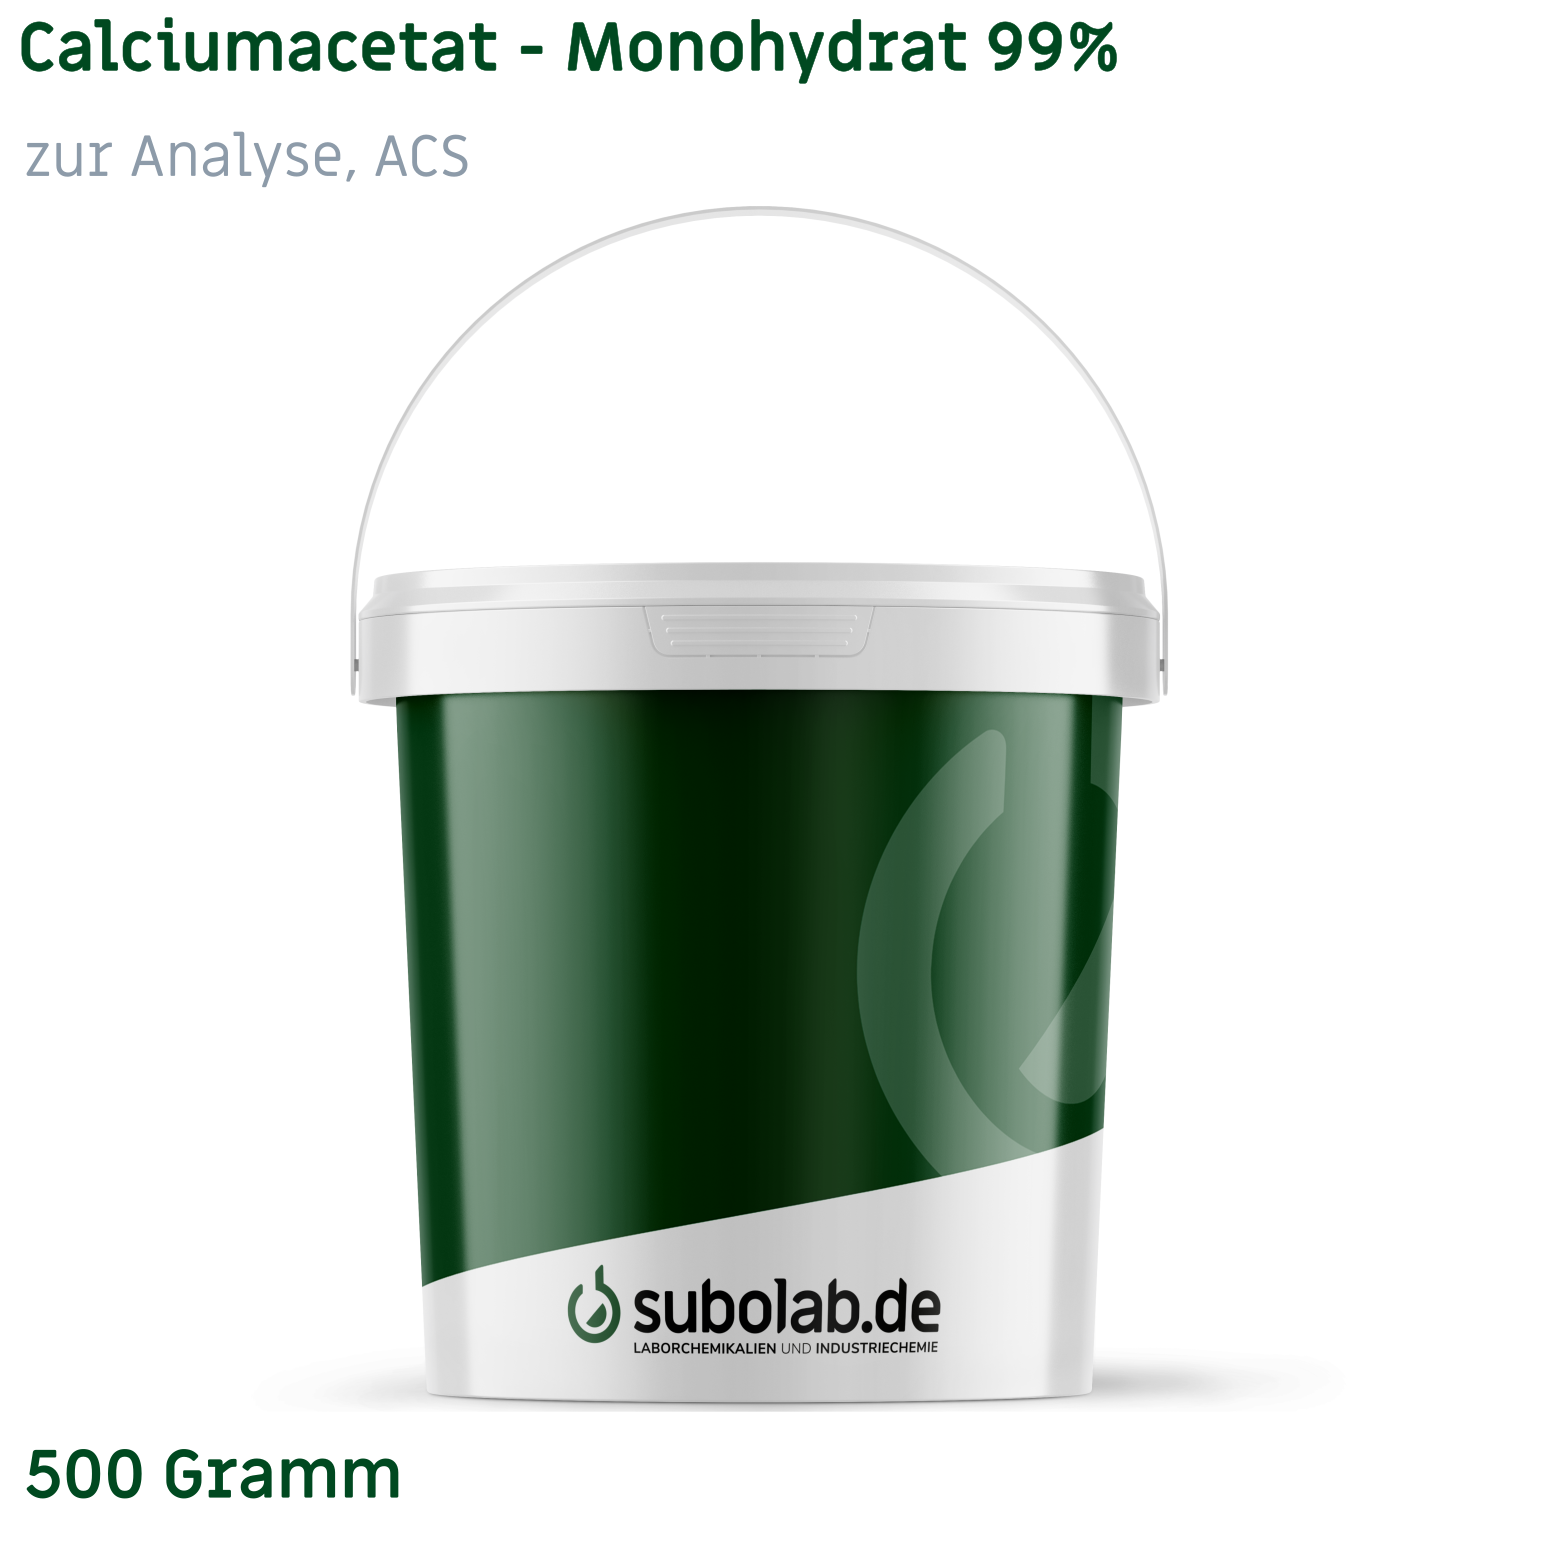 Bild von Calciumacetat - Monohydrat 99% zur Analyse, ACS (500 Gramm)